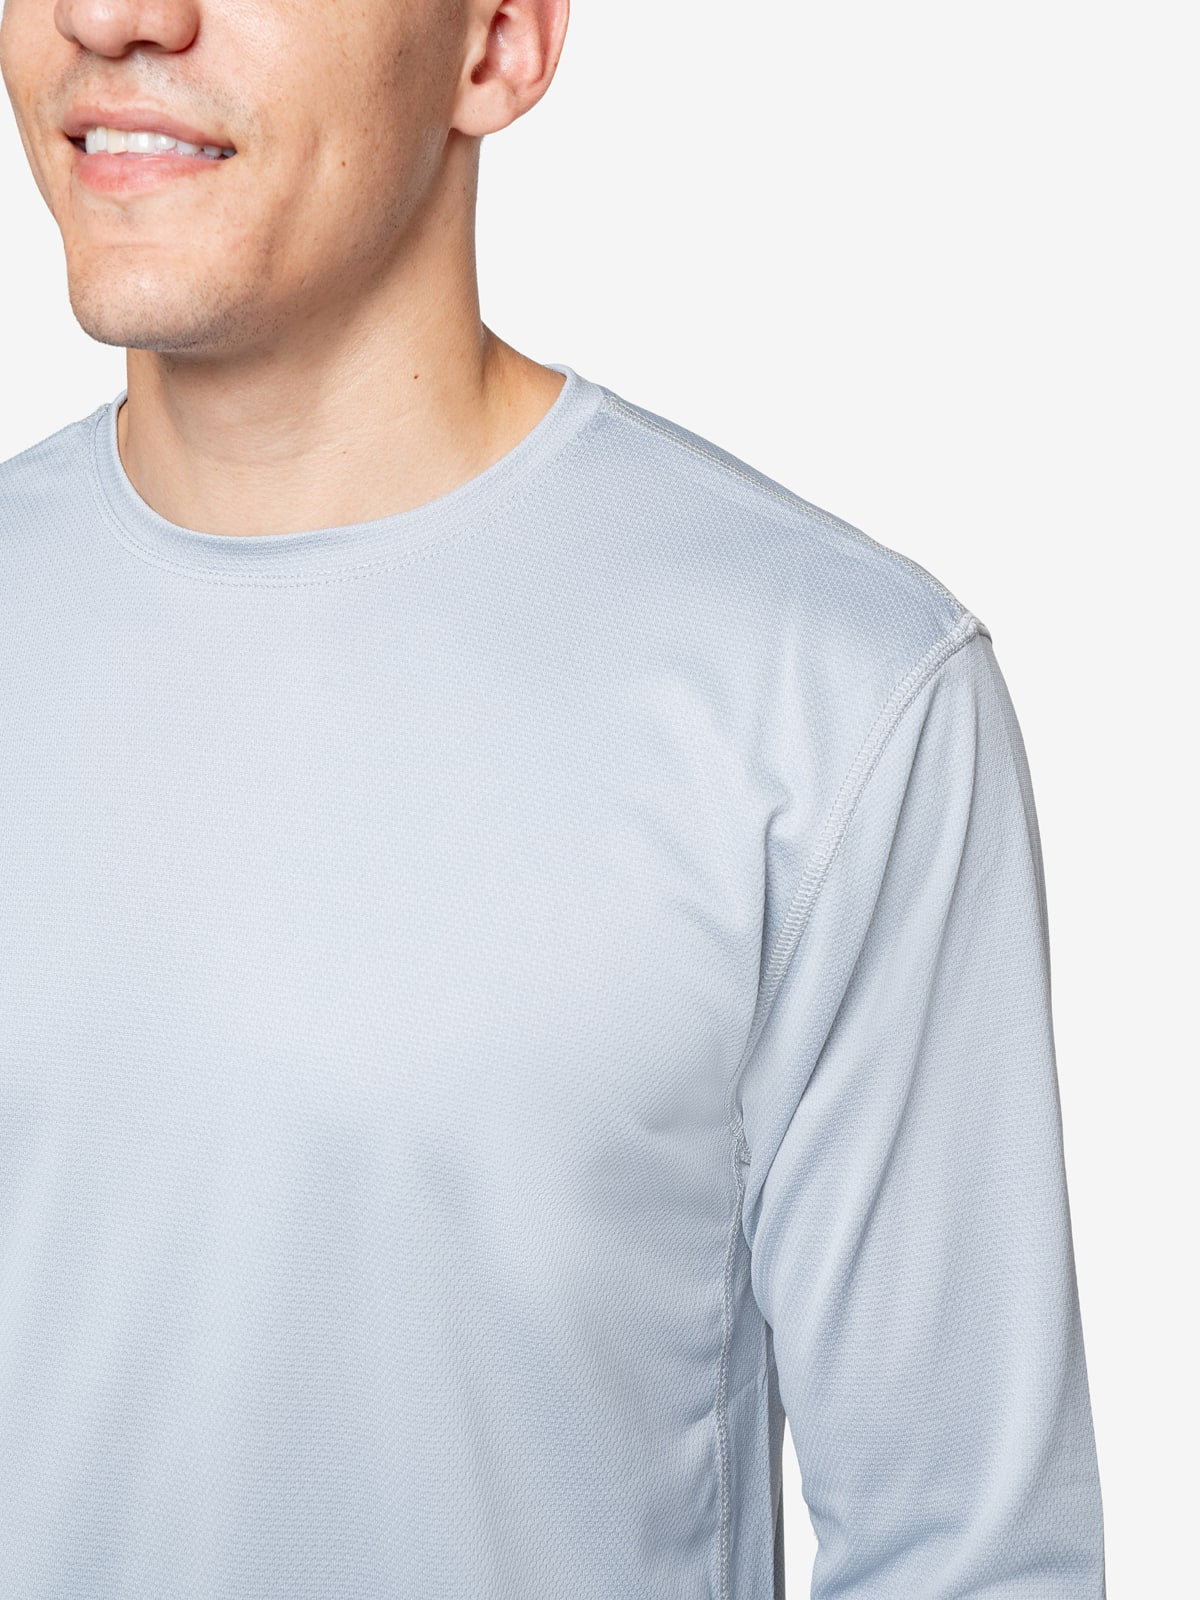 Insect Shield Men's Long Sleeve Tech T-Shirt